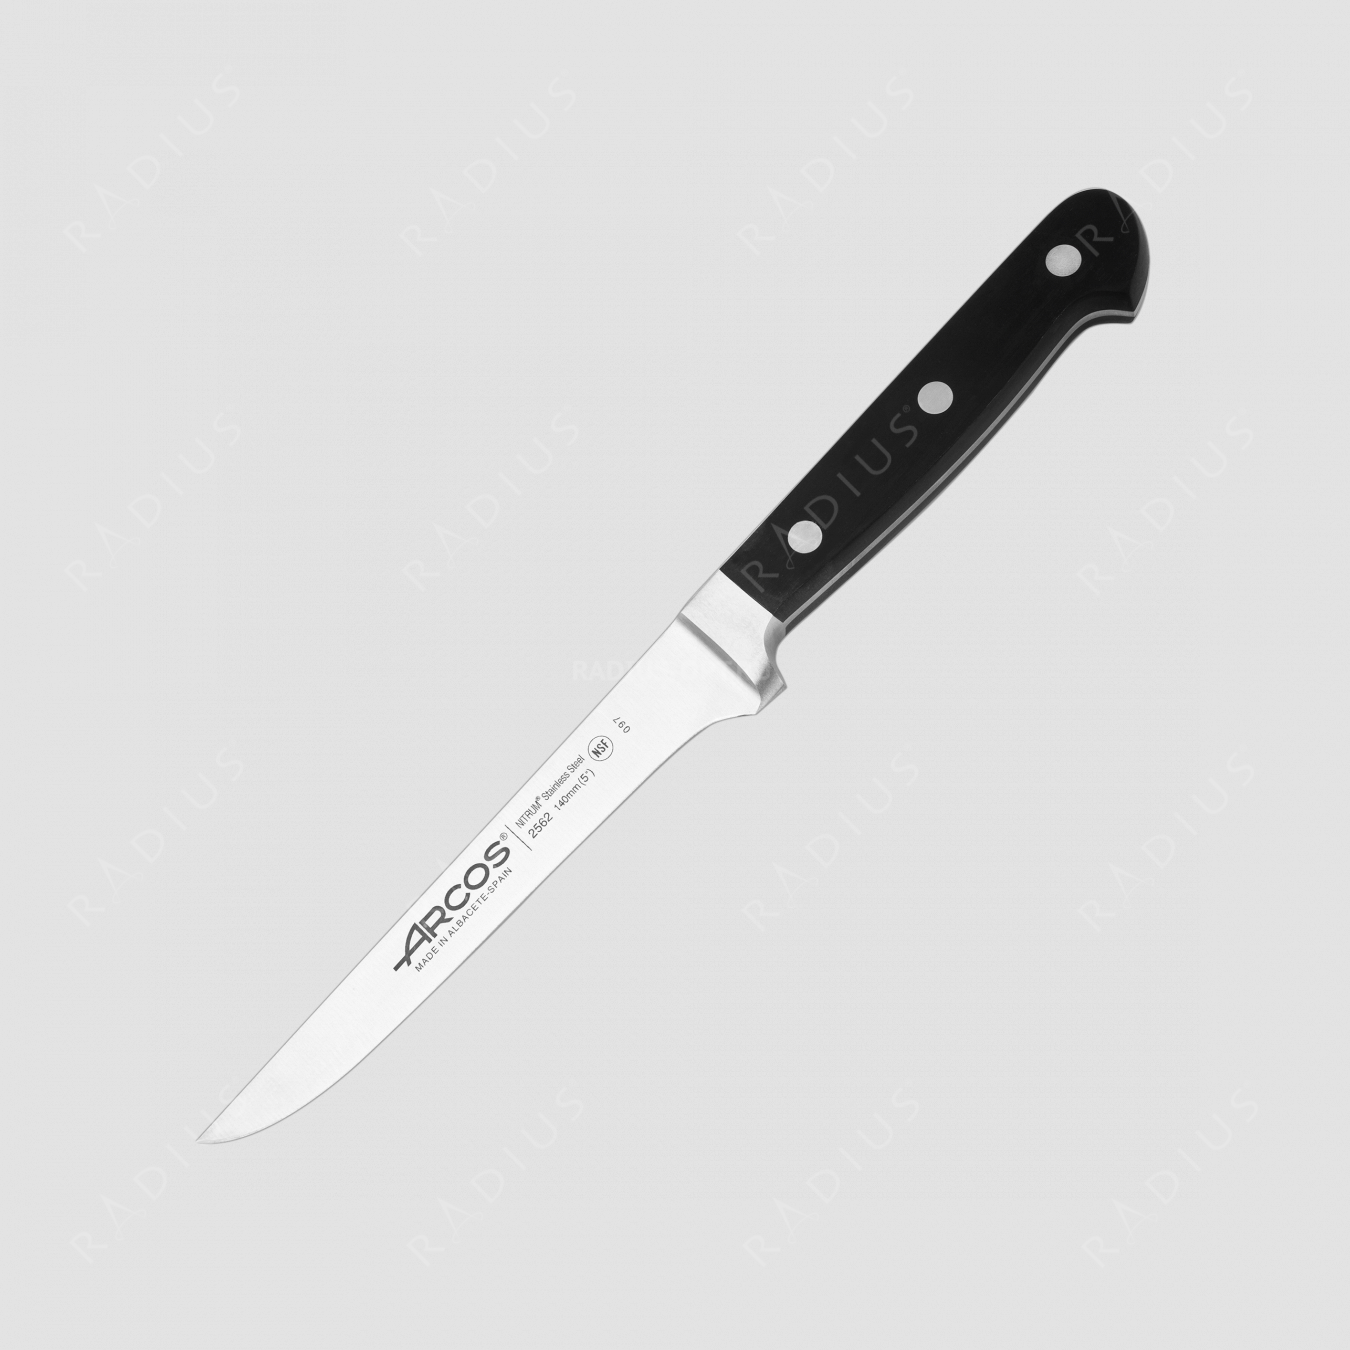 Нож кухонный обвалочный 14 см, серия Clasica, ARCOS, Испания